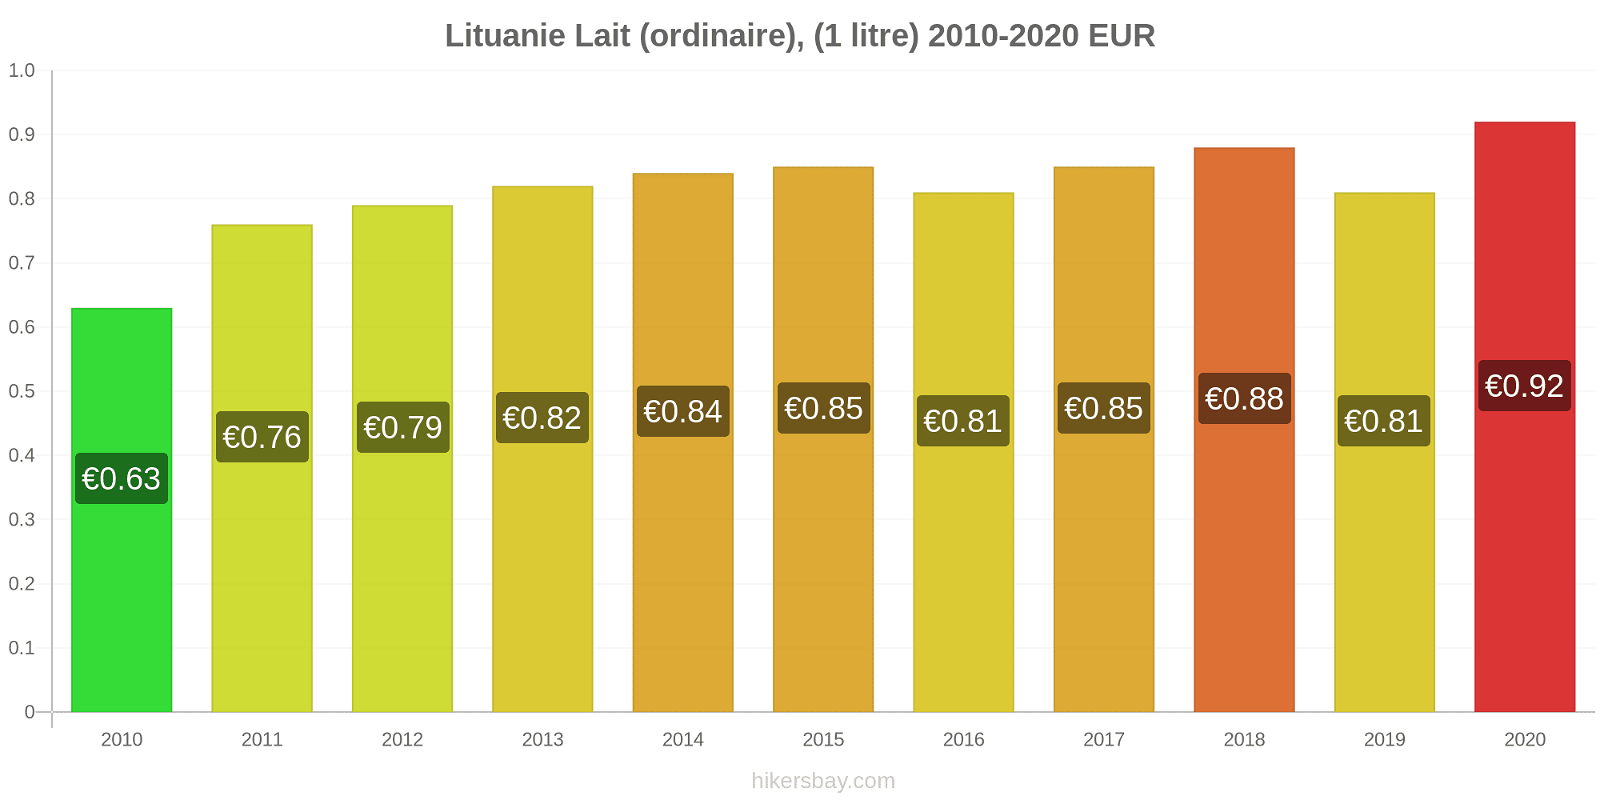 Lituanie changements de prix (Régulier), lait (1 litre) hikersbay.com